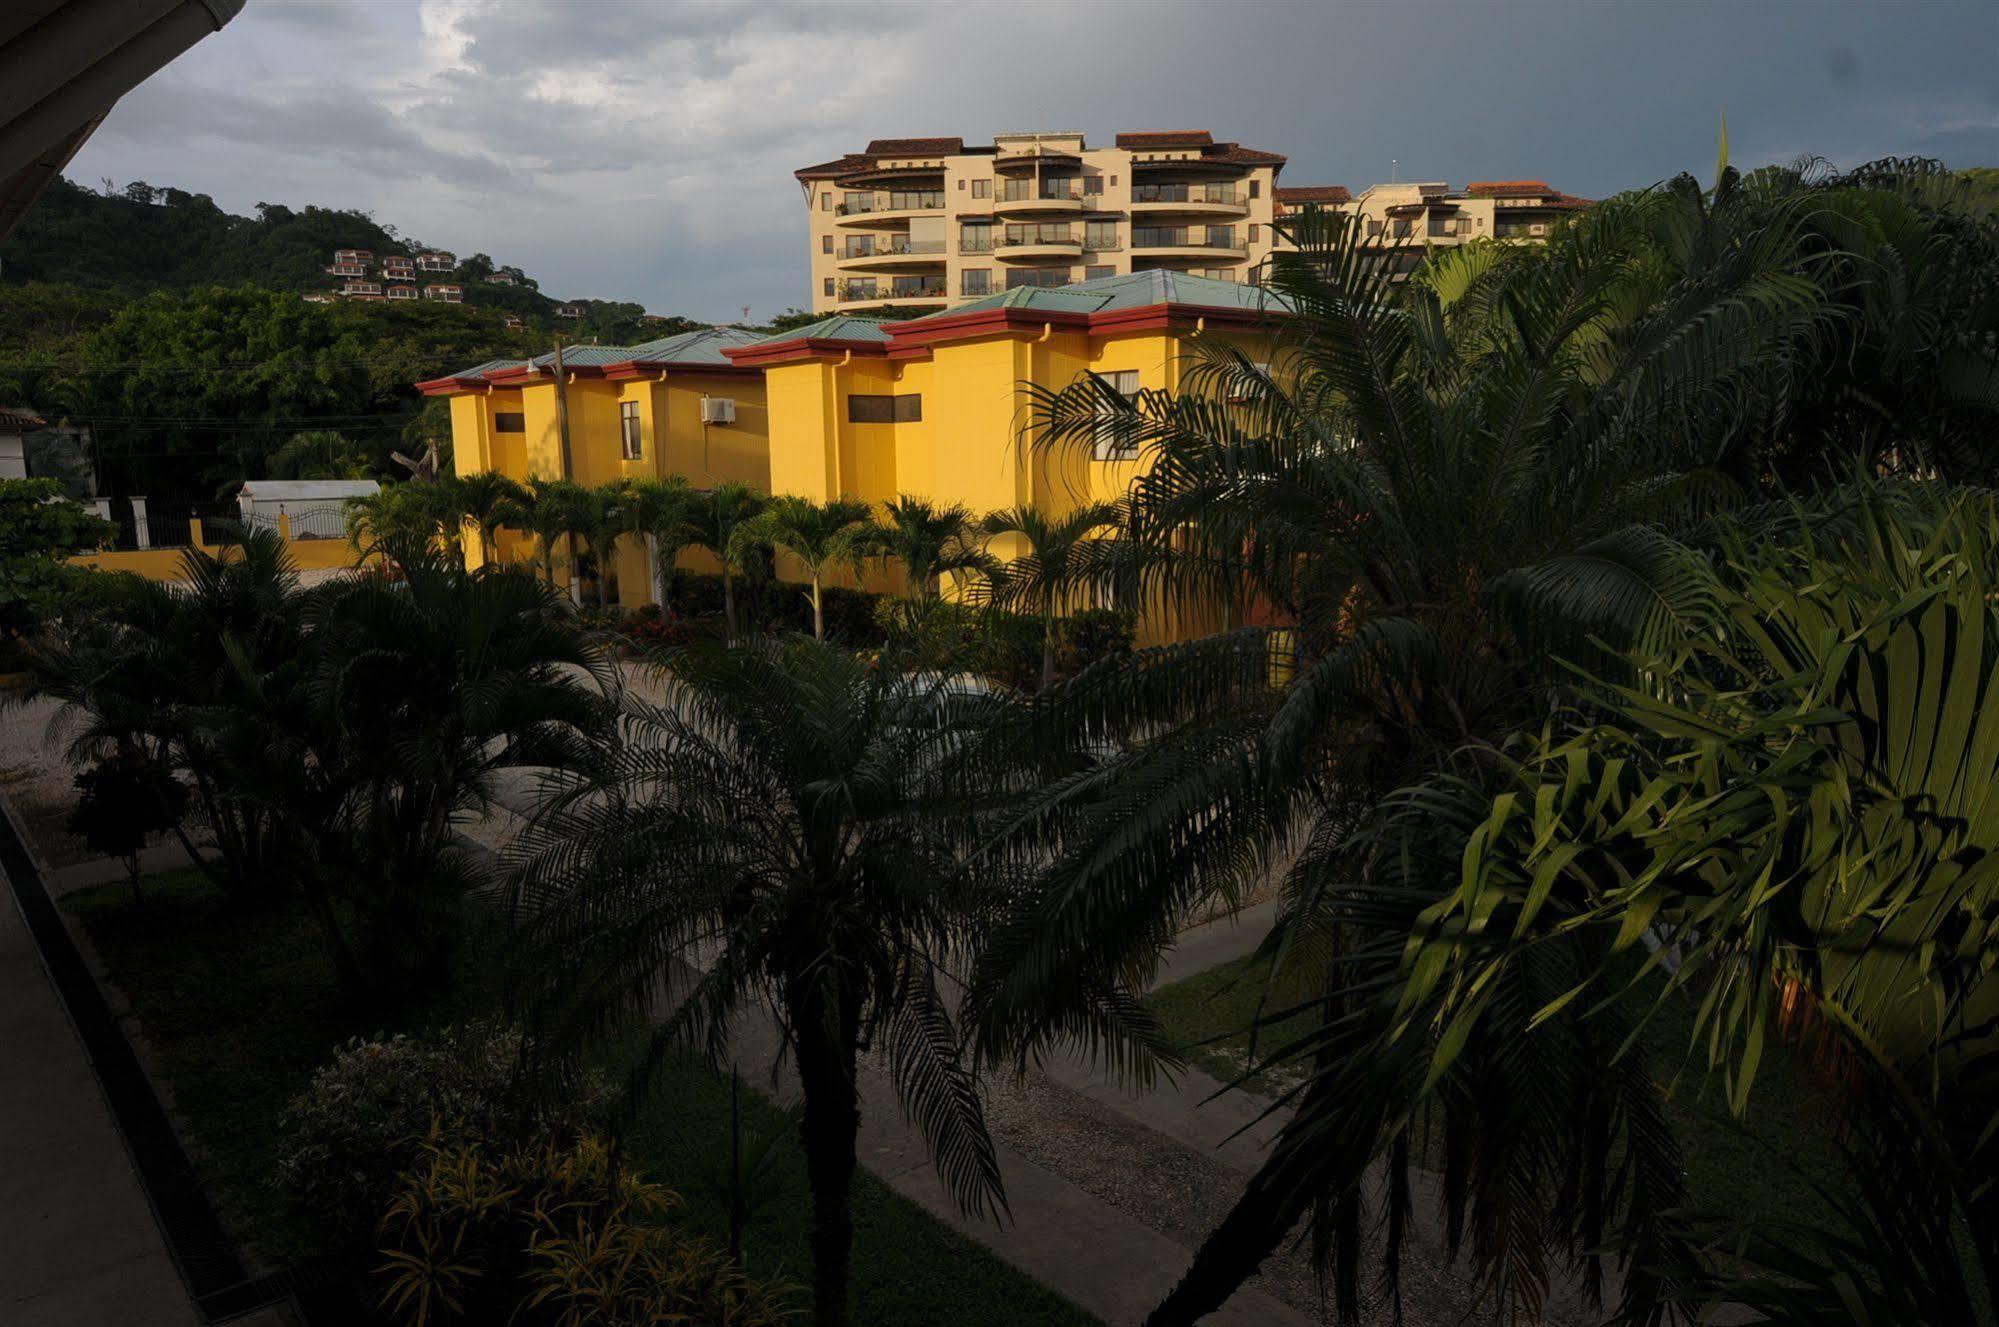 Hotel & Villas Huetares プラヤ・エルモサ エクステリア 写真